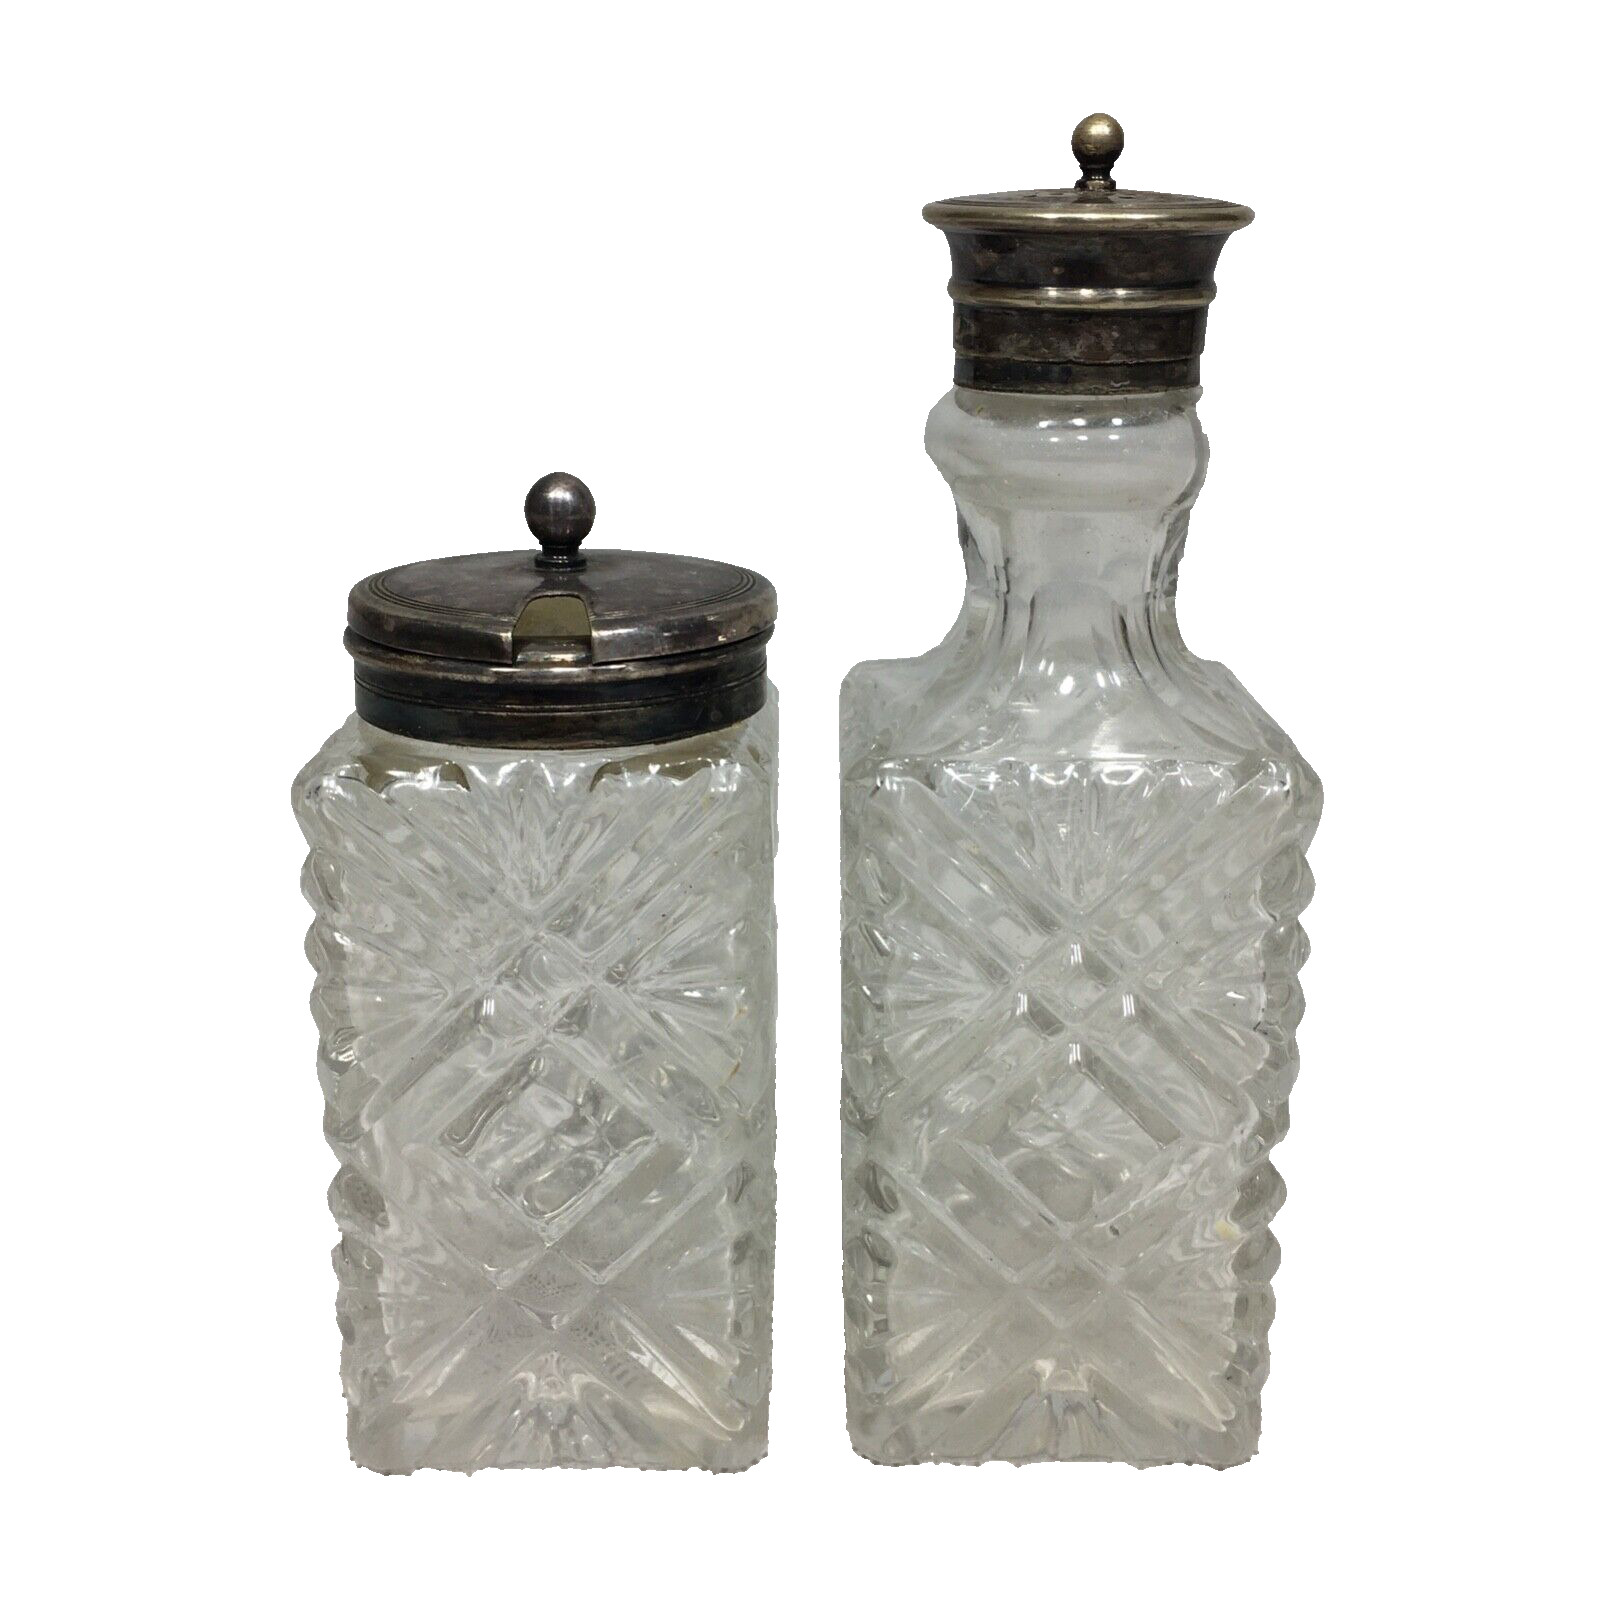 Mustard Jar Hinged Lid & Shaker Bottle Vintage Glass Square Condiment Set